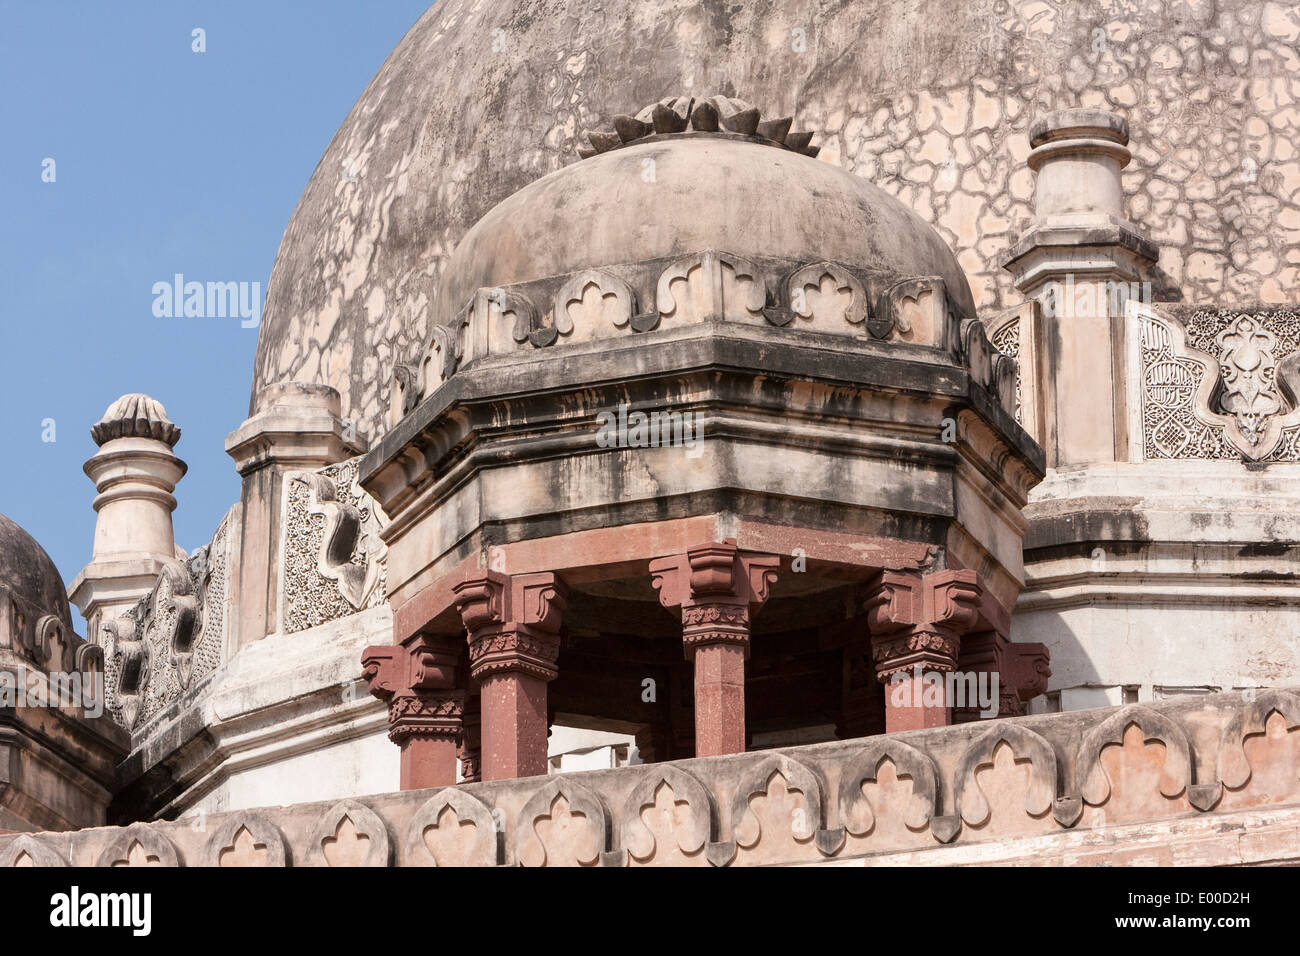 New Delhi, India. Lodi Gardens. Chhatri on Upper Level of Tomb of Muhammad Shah Sayyid, 3rd Sayyid Ruler, 1434-44.  Lotus Motif. Stock Photo